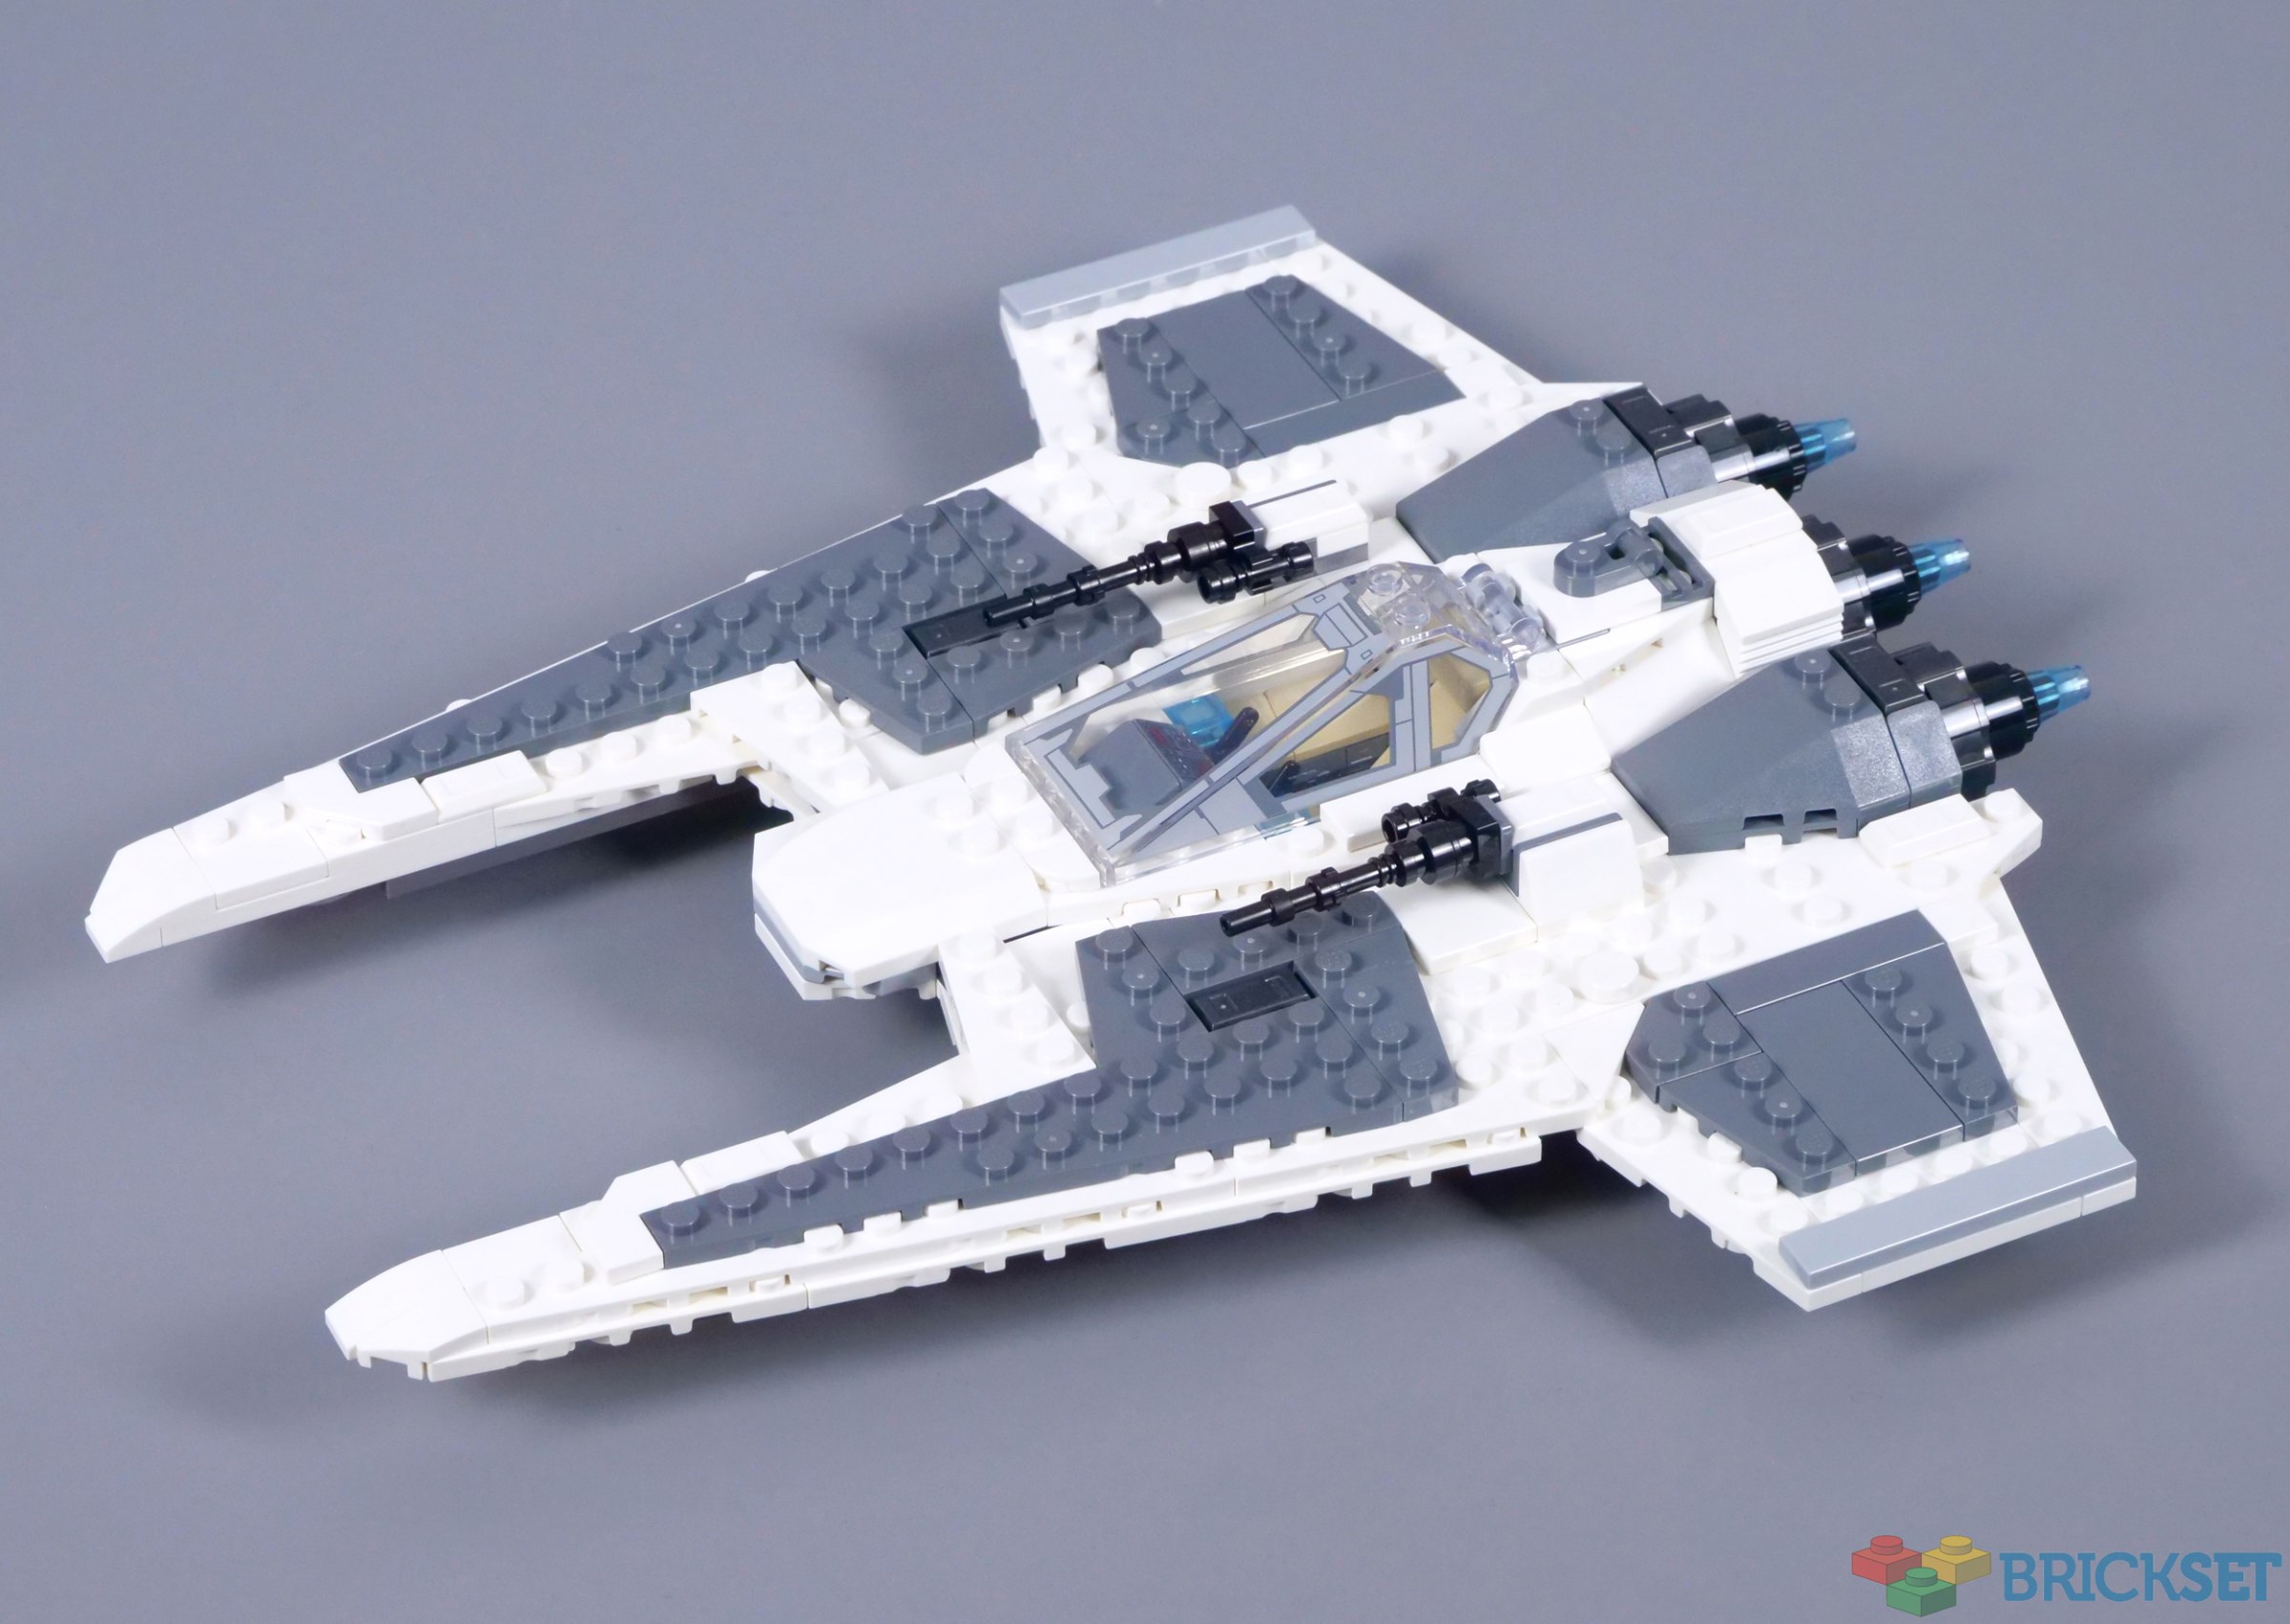 LEGO 75348 Star Wars Mandalorian Fang Fighter vs TIE Interceptor Byggset  med Två Starfighters, Byggleksak för Barn med 3 Minifigurer, och  Droid-figur, Samlarobjekt, Presentidé, från 9 år : : Leksaker